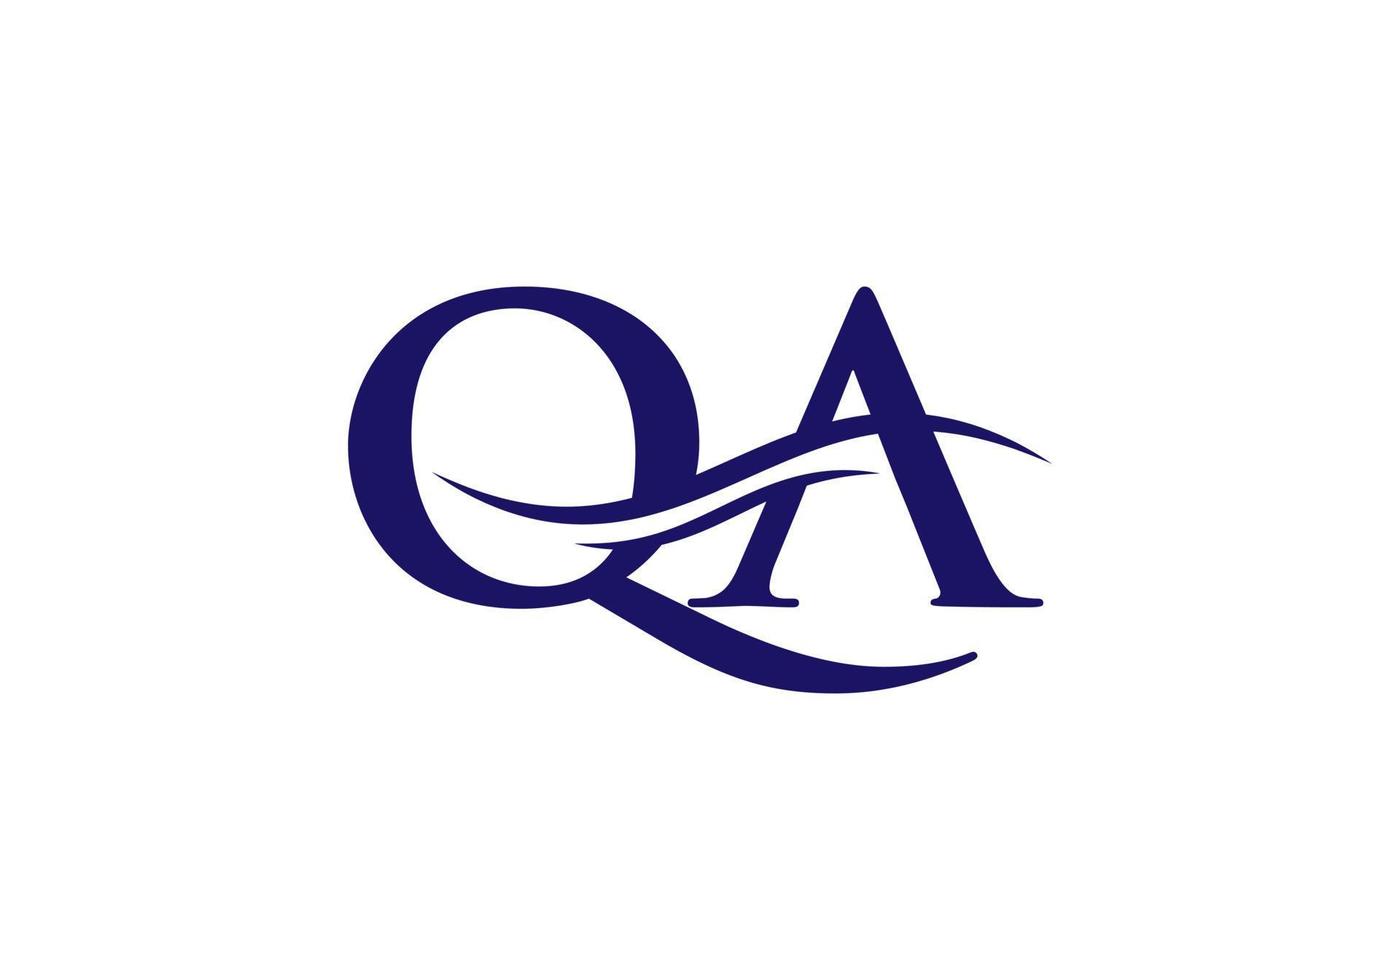 design de logotipo qa. vetor inicial do logotipo da letra qa. design de logotipo de letra swoosh qa